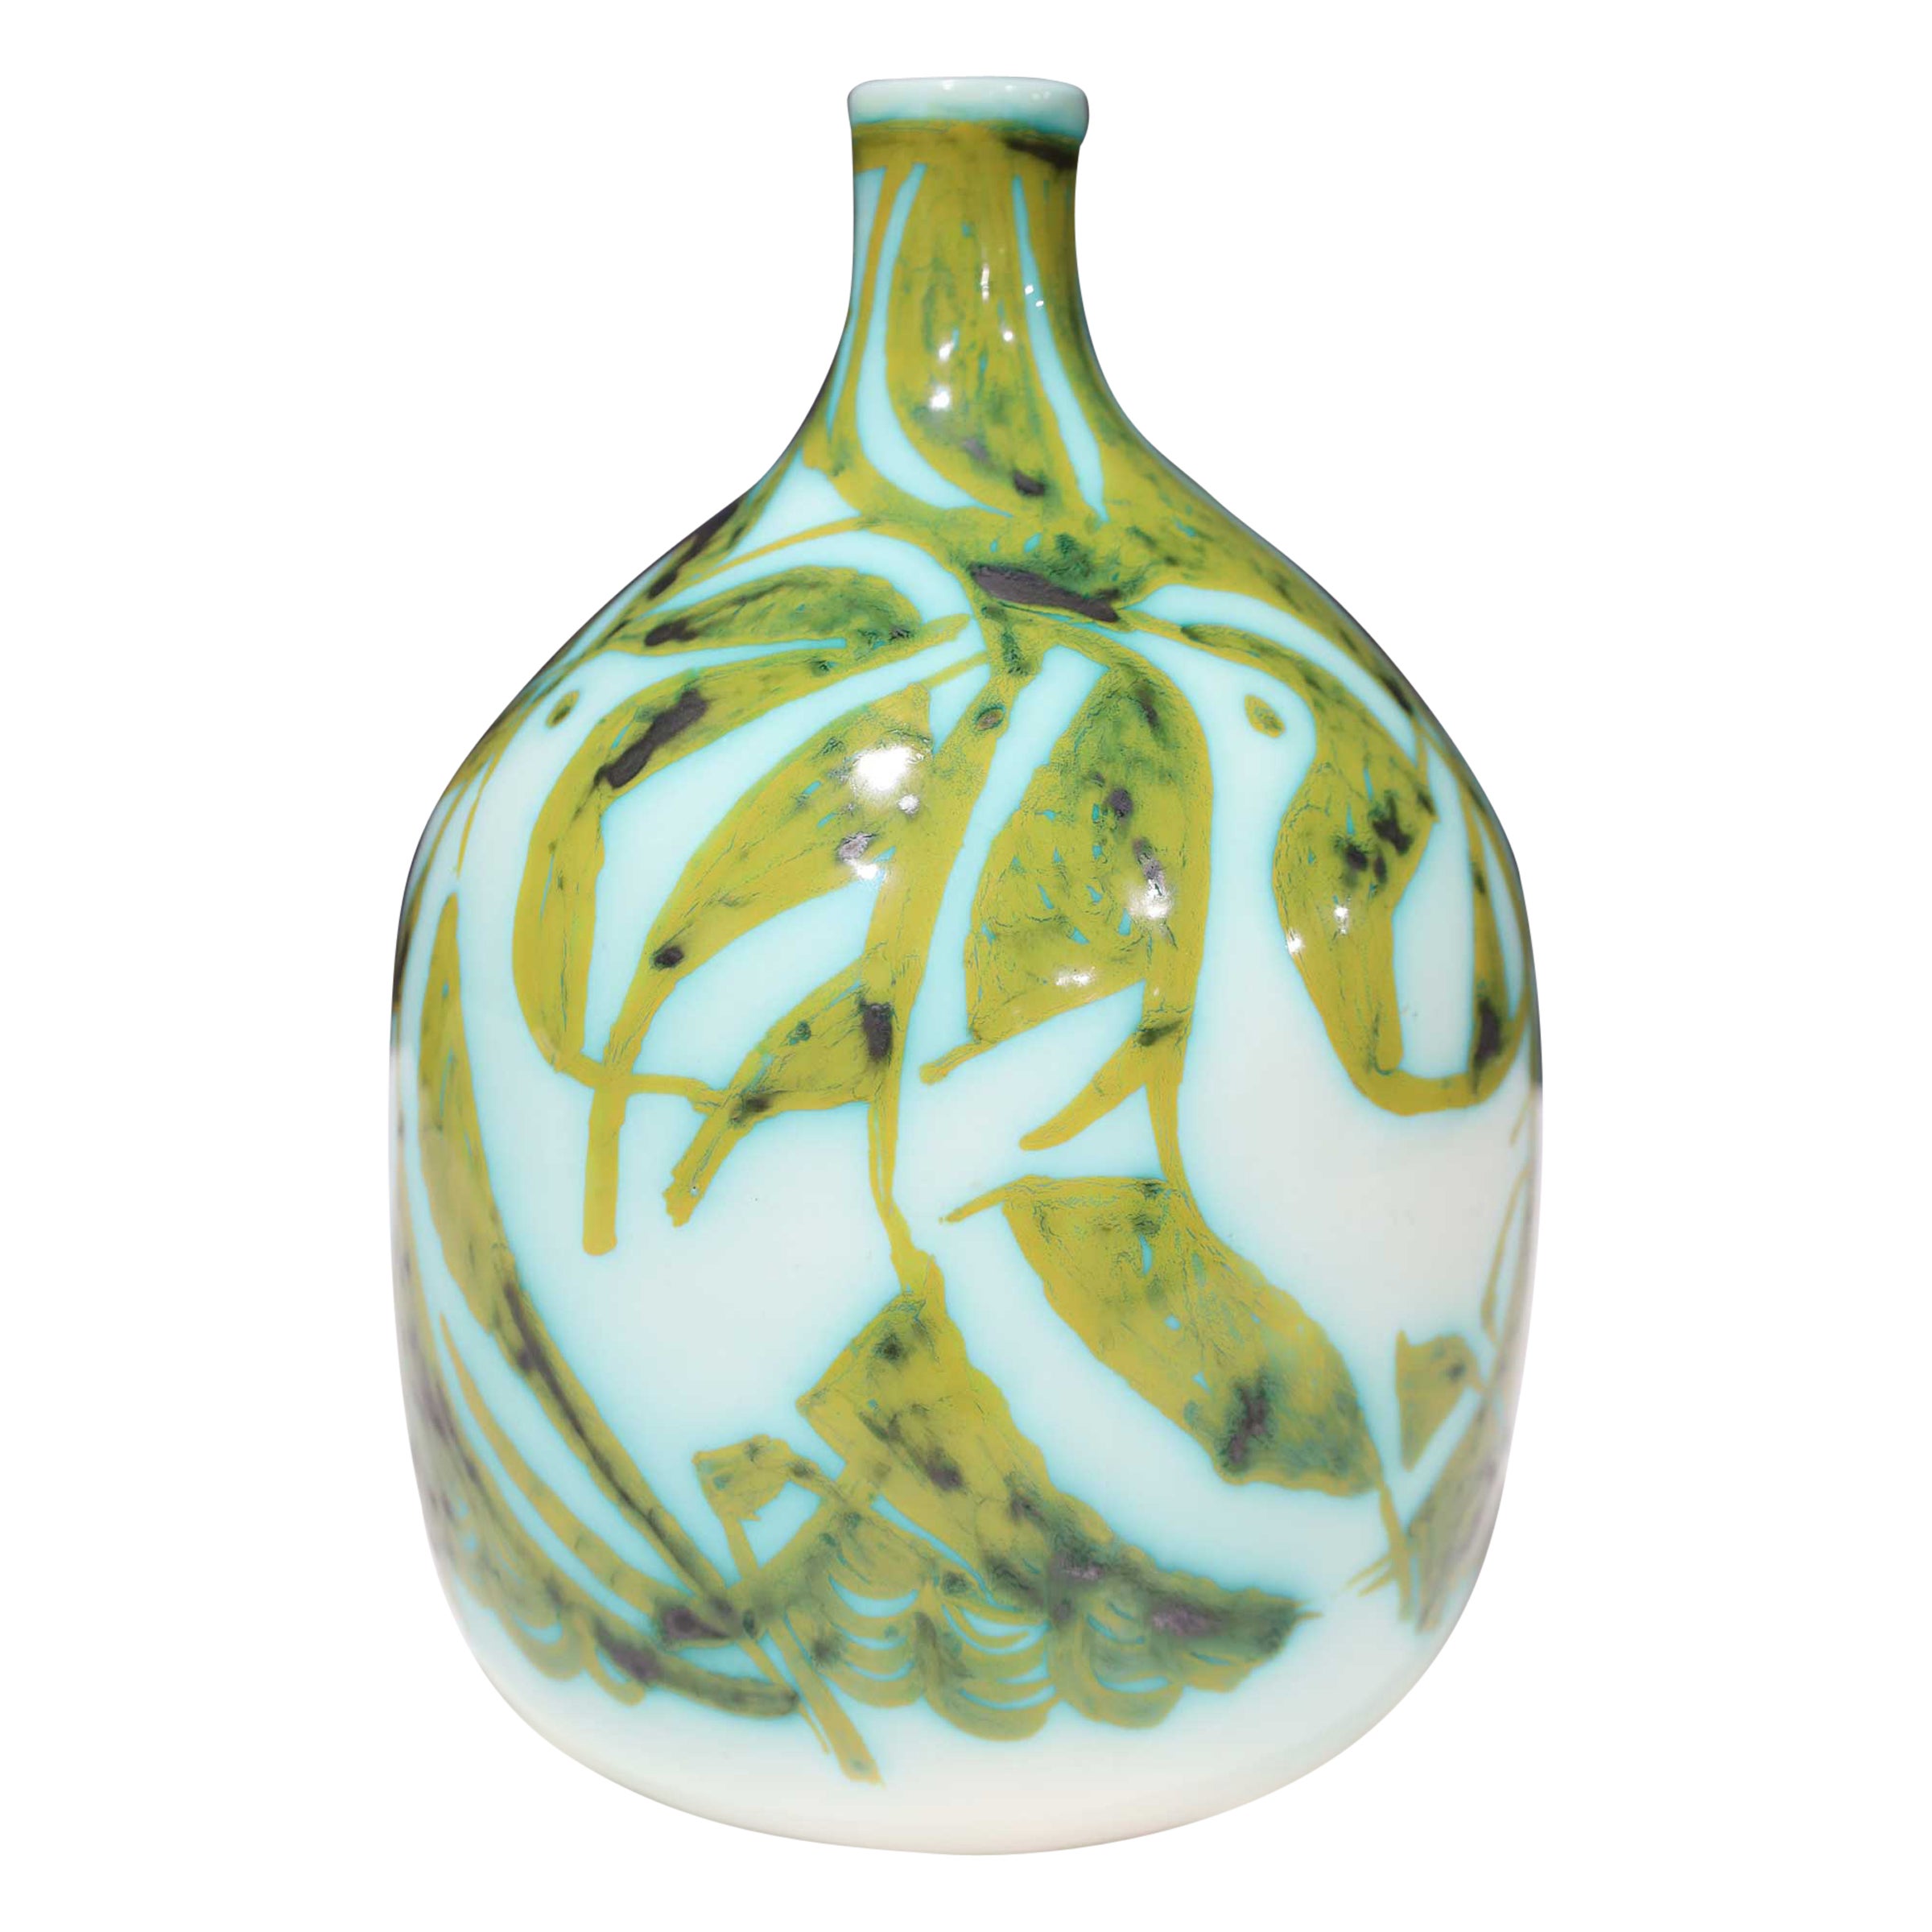 Vase, Keramik, grün und weiß, von Alessio Tasca für Raymor, signiert